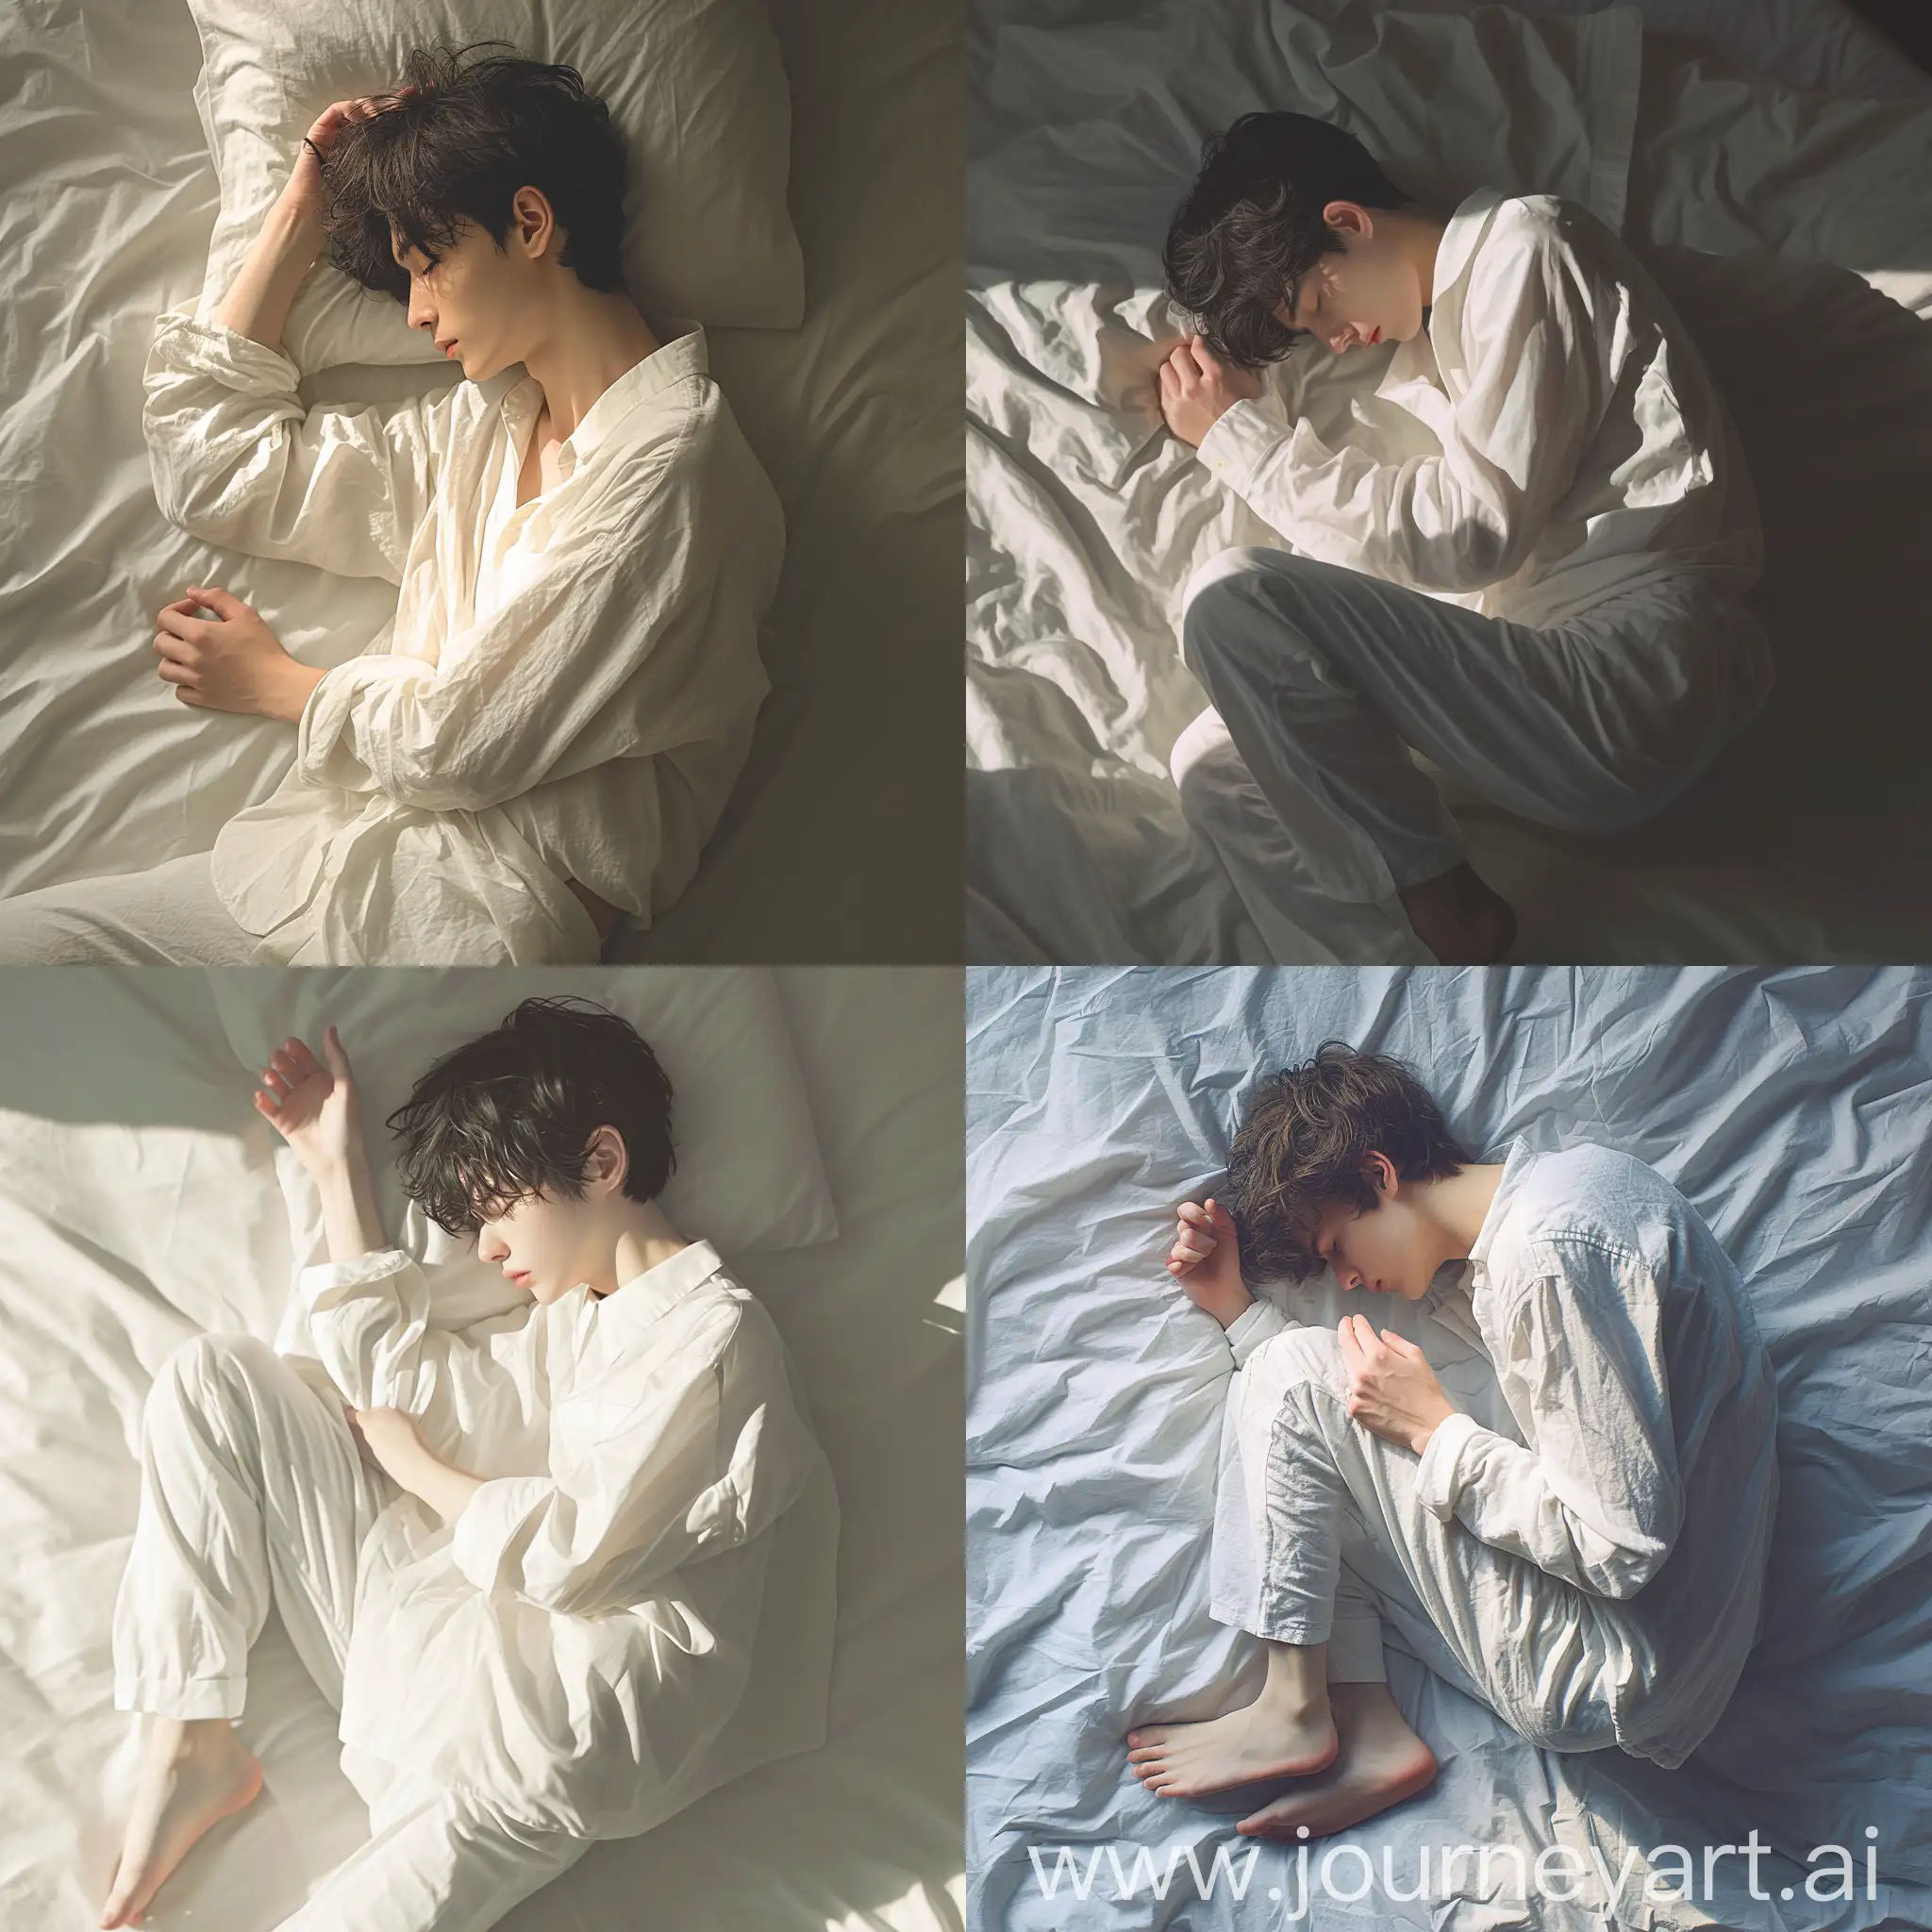 一个20岁的男人, 躺在床上, 白色衣服, 安静的睡着, 俯视视角, 最高质量 --niji 6